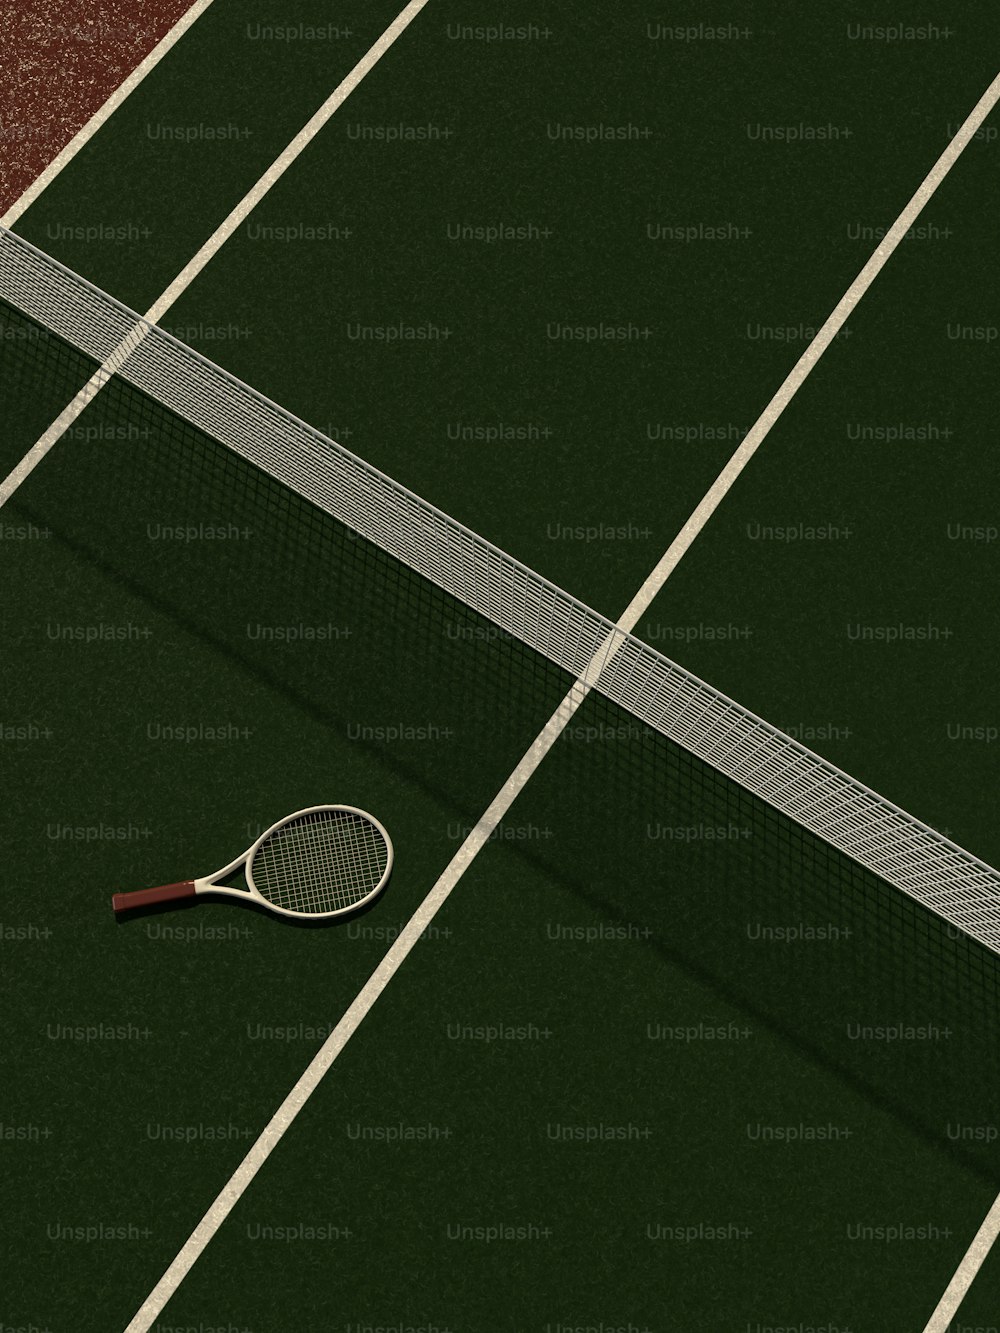 uma raquete de tênis e bola em uma quadra de tênis